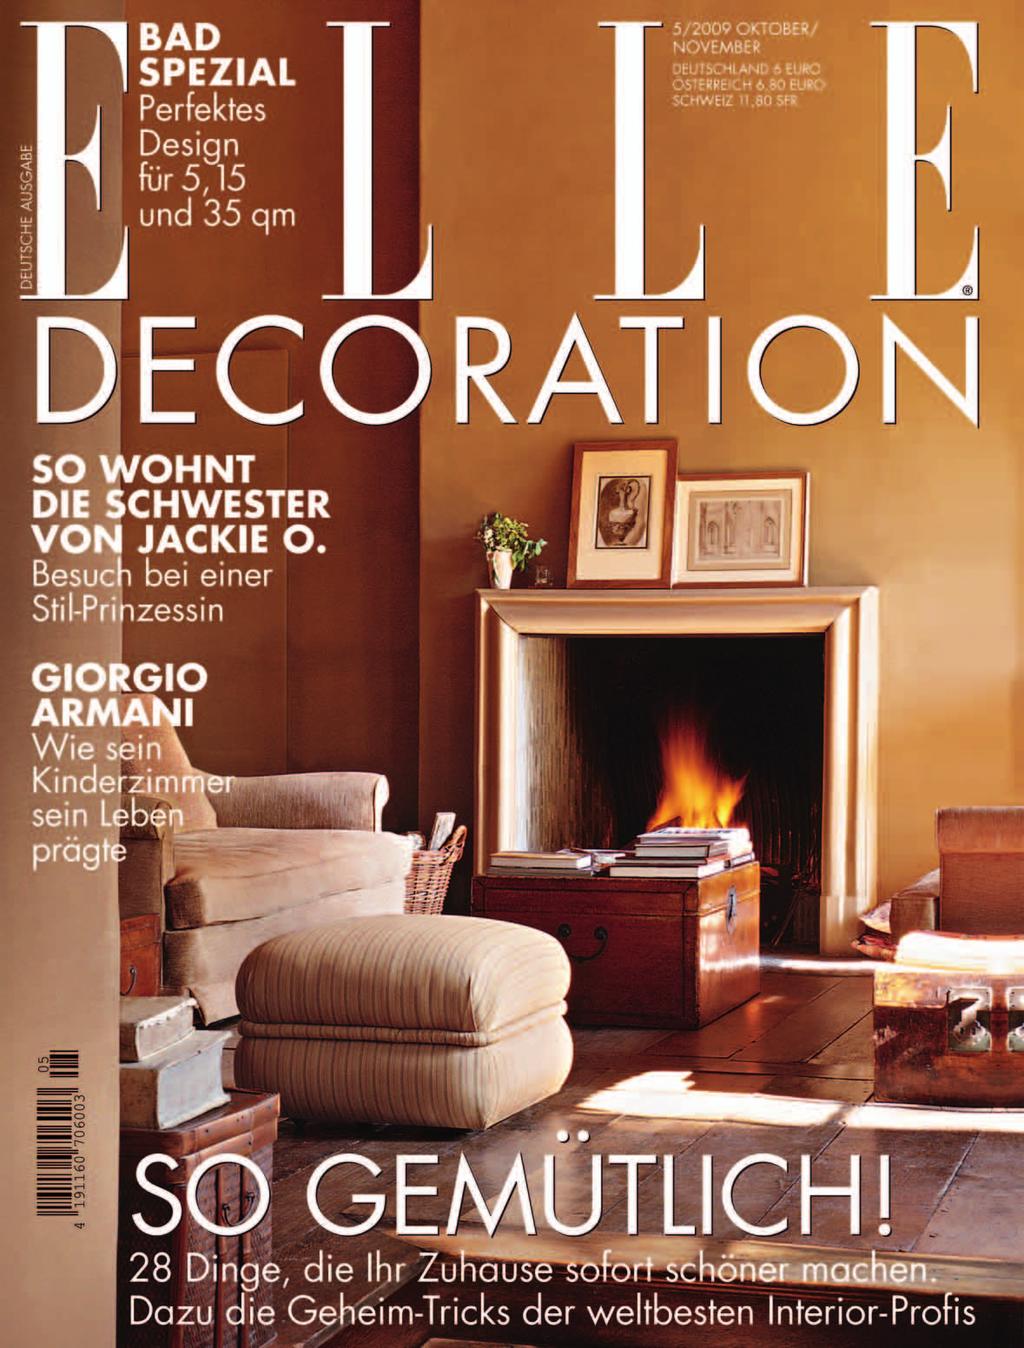 TITELPORTRÄT BEAUTIFUL AND USEFUL: ELLE DECORATION ist ein anspruchsvolles Interior- und Genuss- Magazin. ELLE DECORATION ist elegant, modern und stilbewußt.